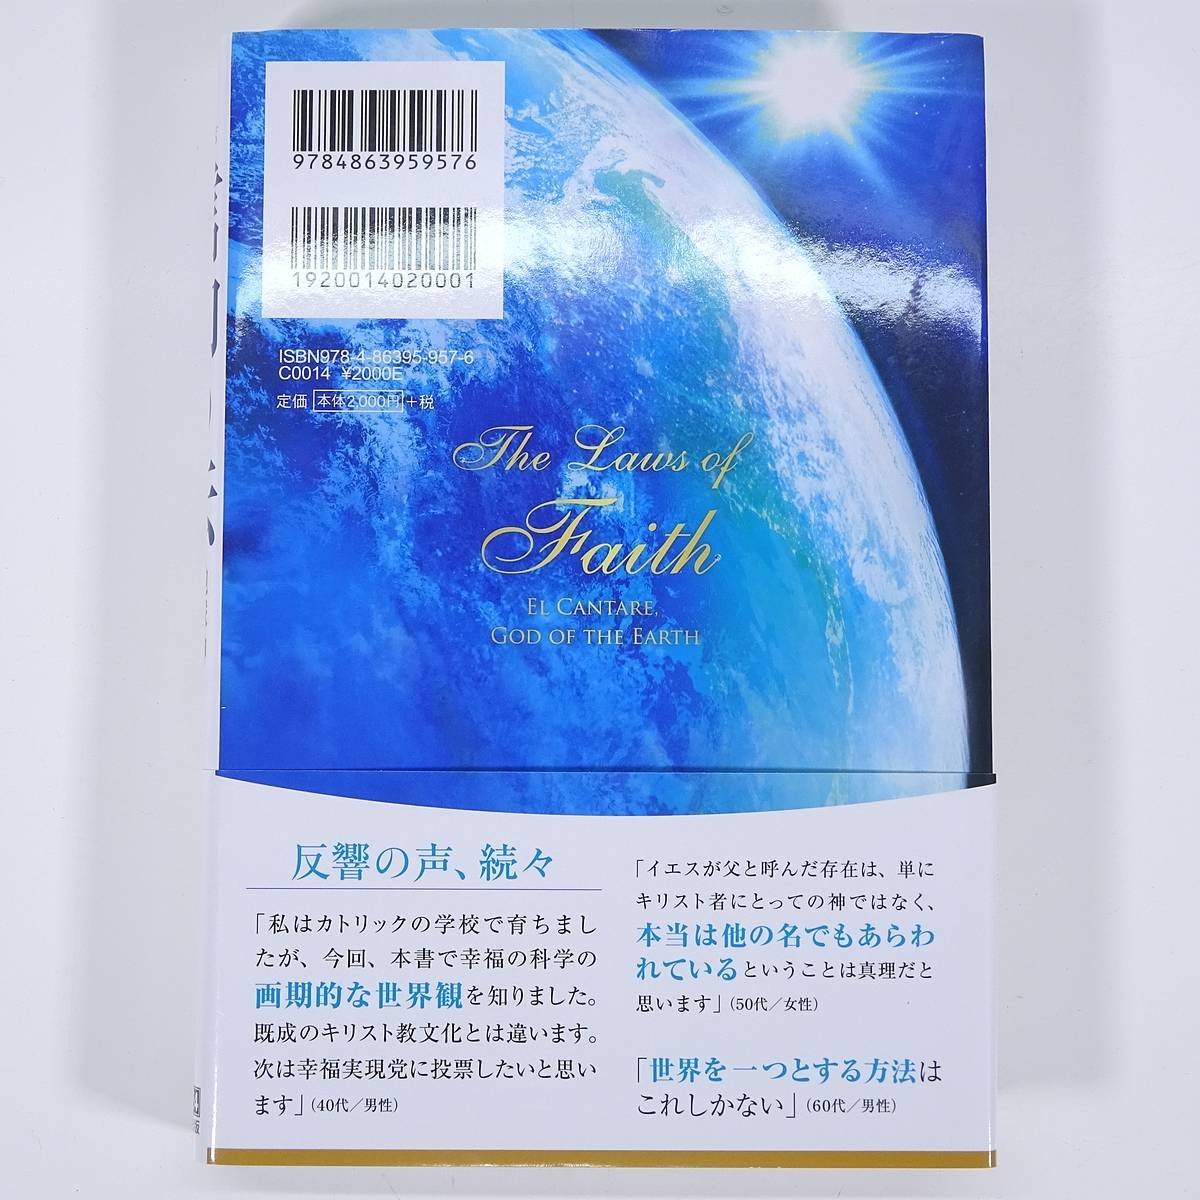 信仰の法 地球神エル・カンターレとは 大川隆法 幸福の科学出版 2018